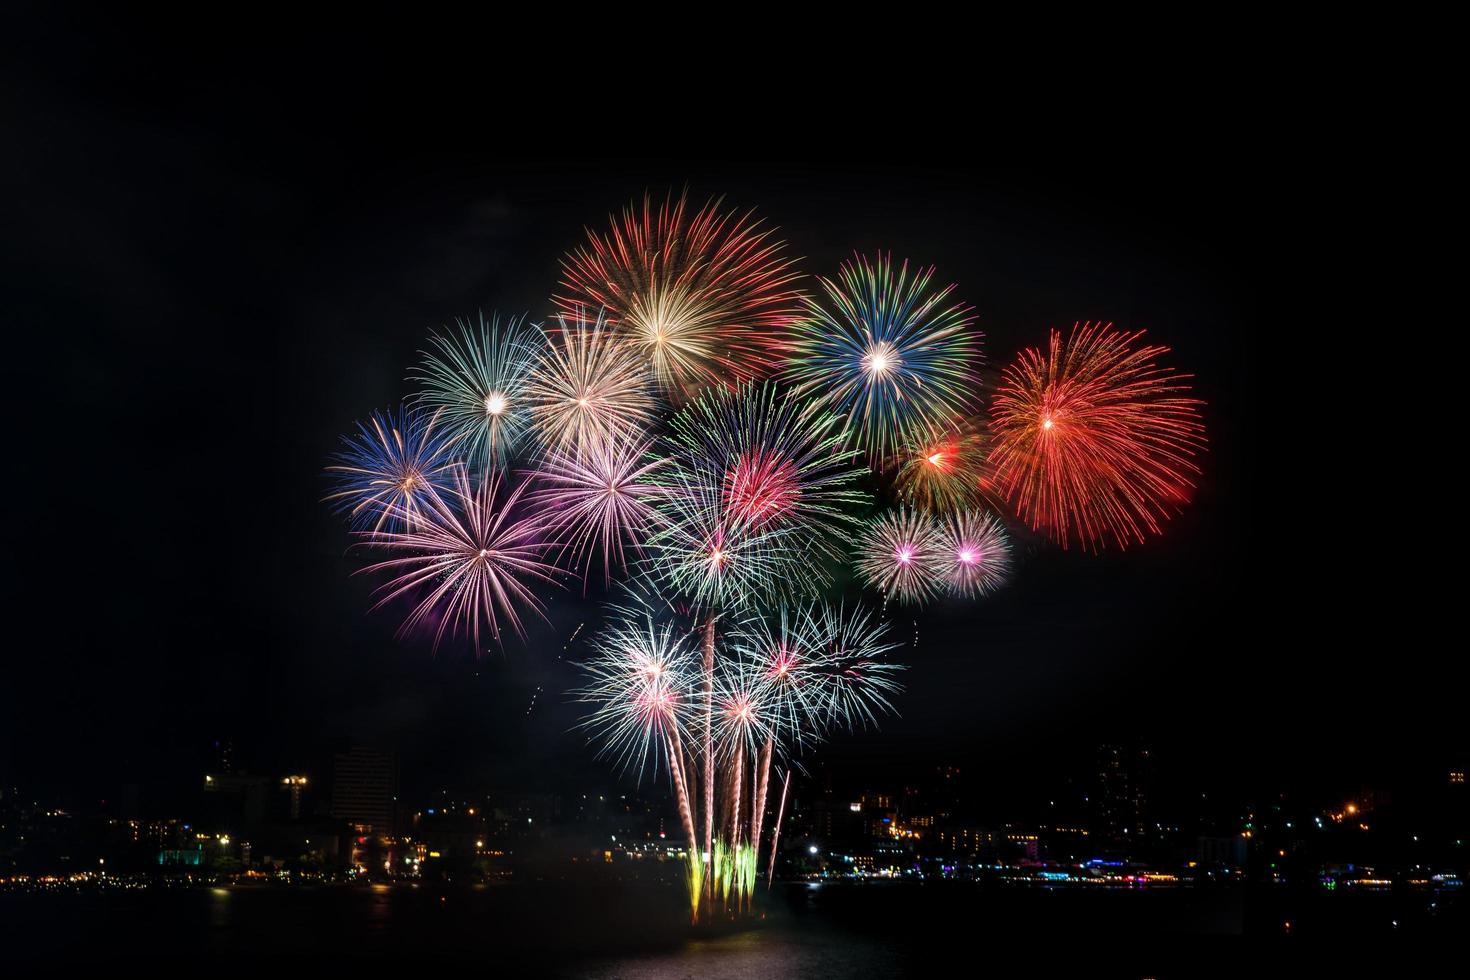 kleurrijk vuurwerk van verschillende kleuren 's nachts met feest- en jubileumconcept foto